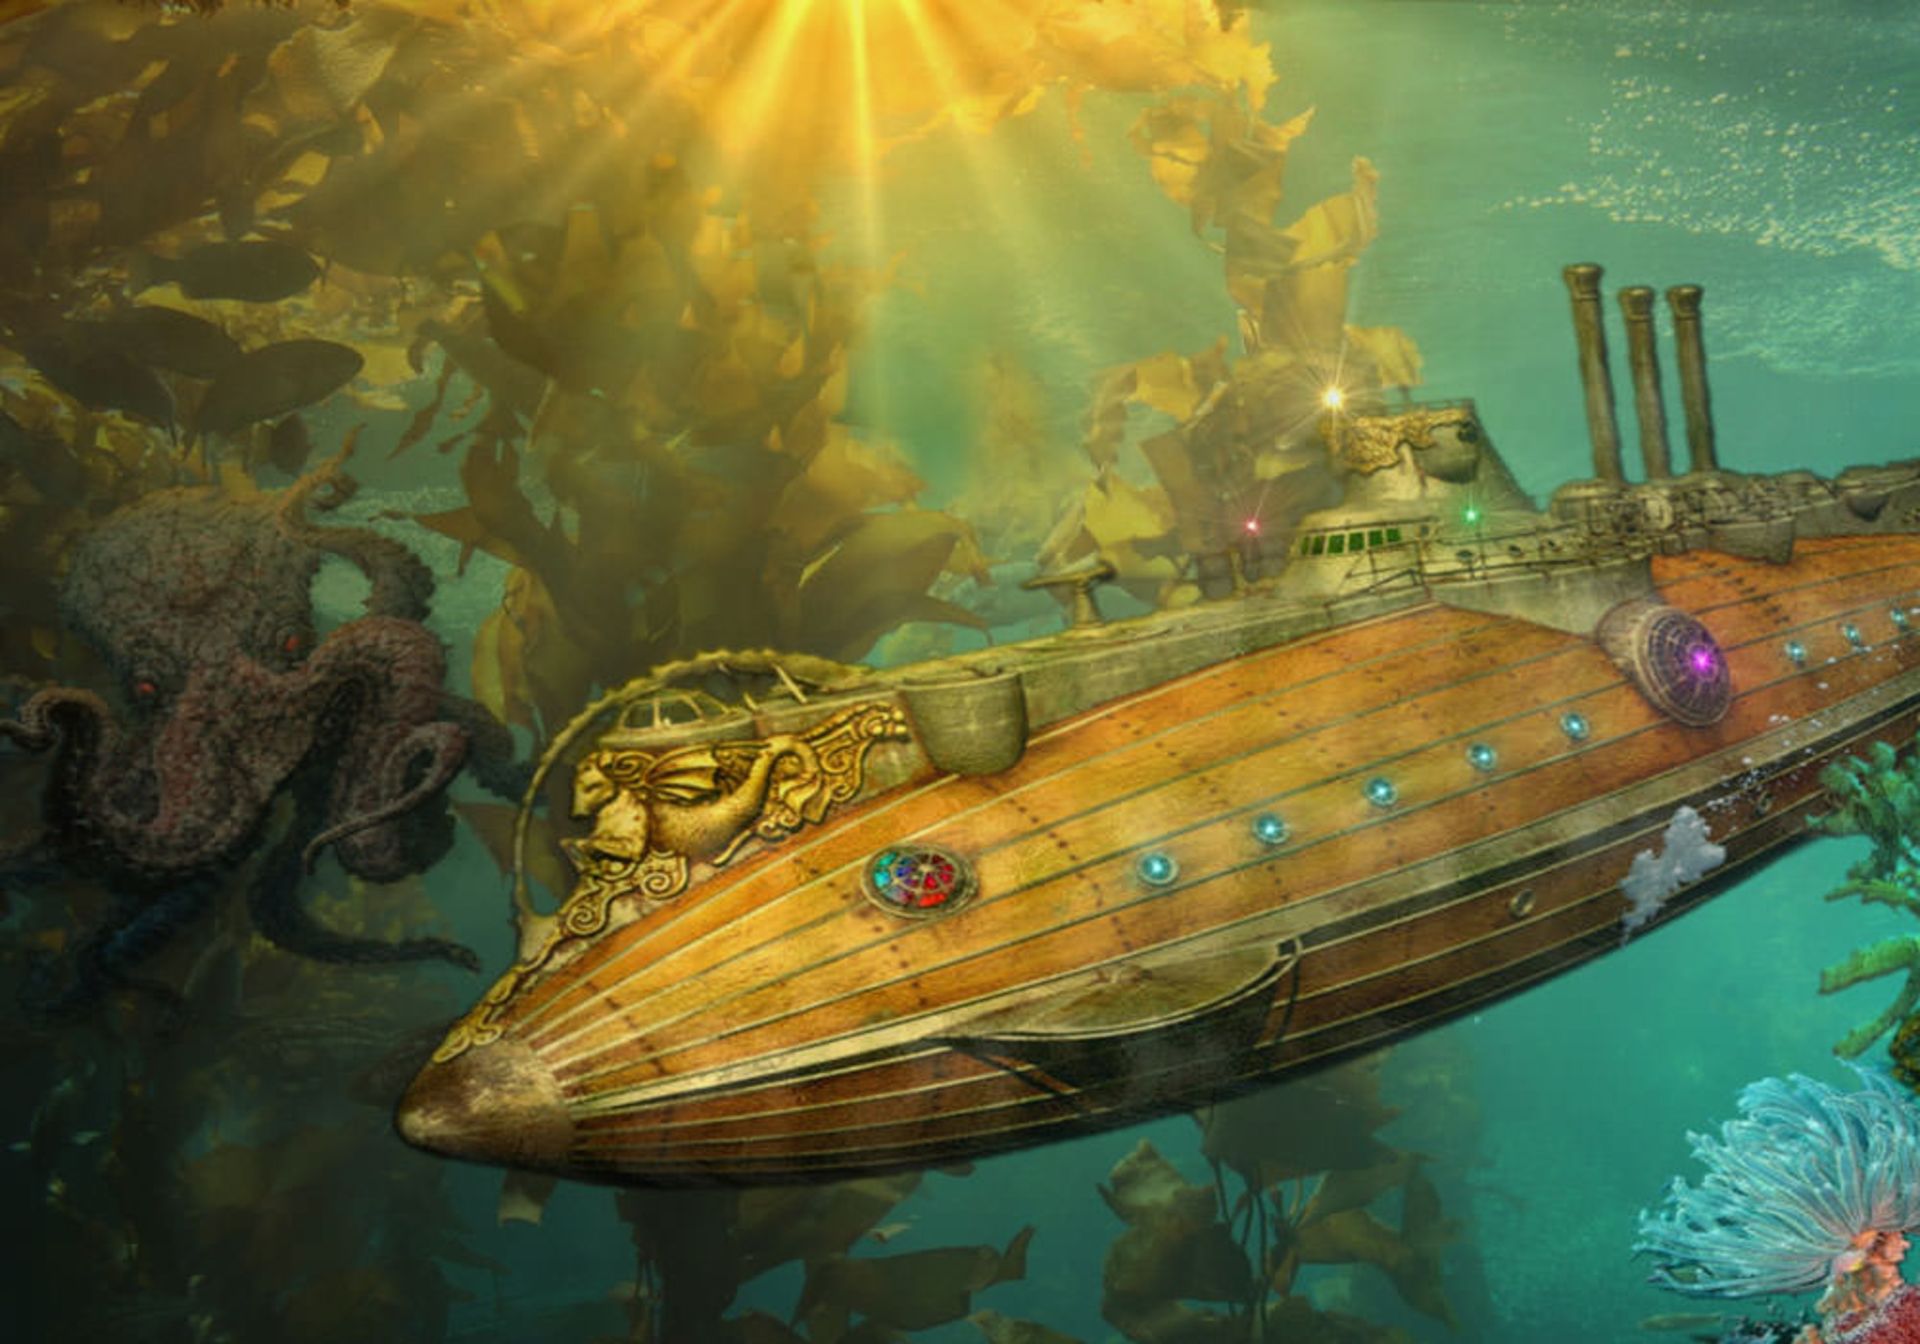 زیر دریایی ناتیلوس در رمان بیست هزار فرسنگ زیر دریا شباهت زیادی به نمونه های امروزی دارد